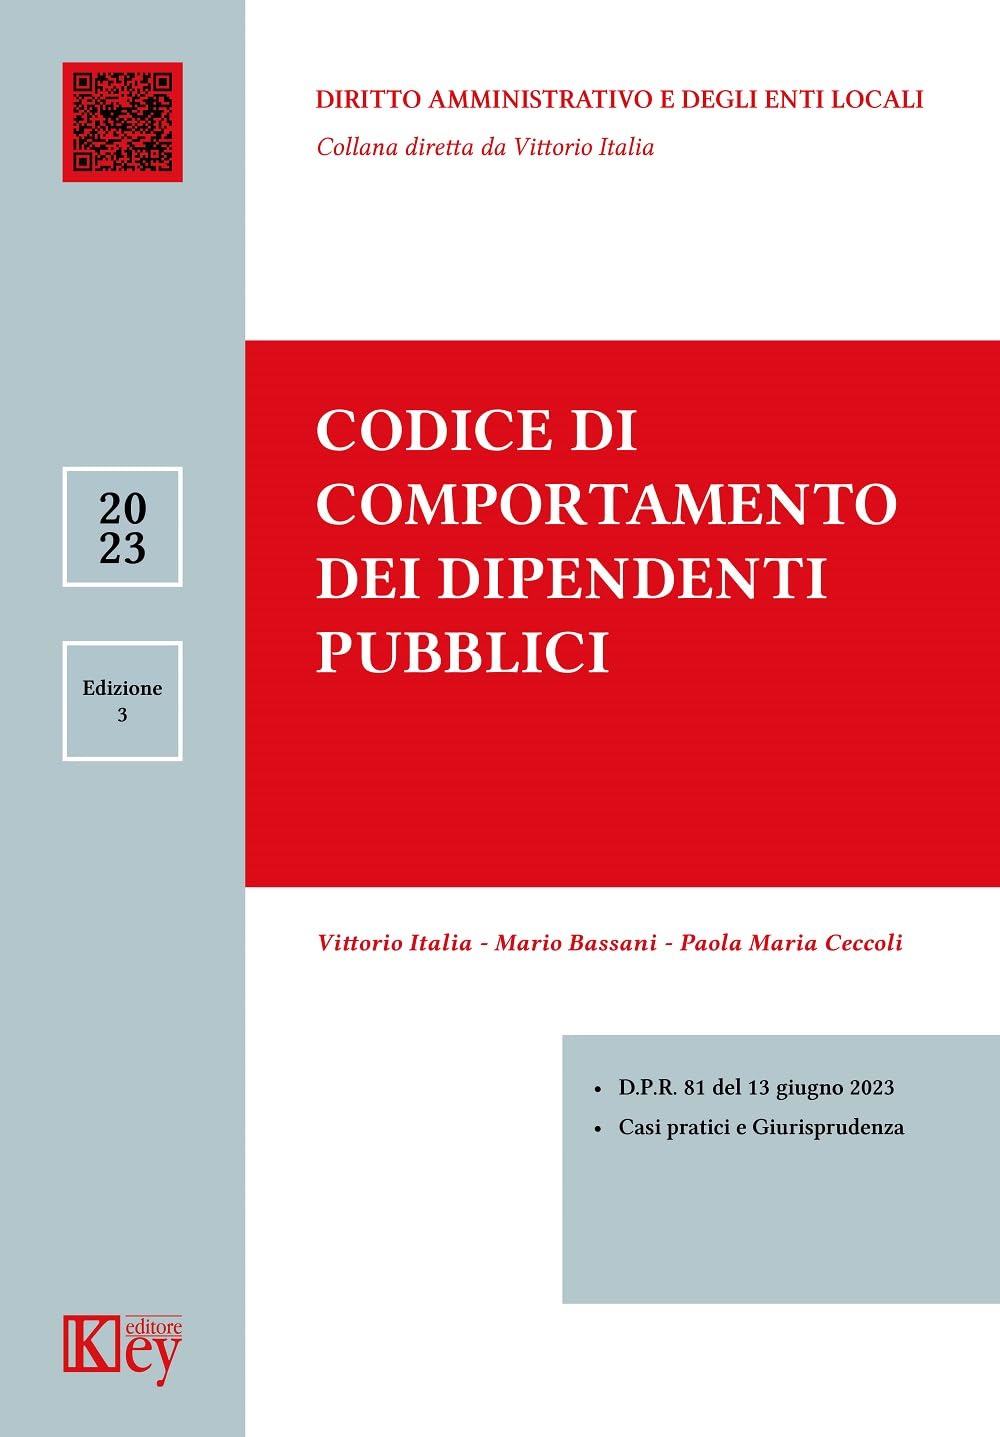 Libri Paola Ceccoli / Mario Bassani / Vittorio Italia - Codice Di Comportamento Dei Dipendenti Pubblici NUOVO SIGILLATO, EDIZIONE DEL 13/07/2023 SUBITO DISPONIBILE